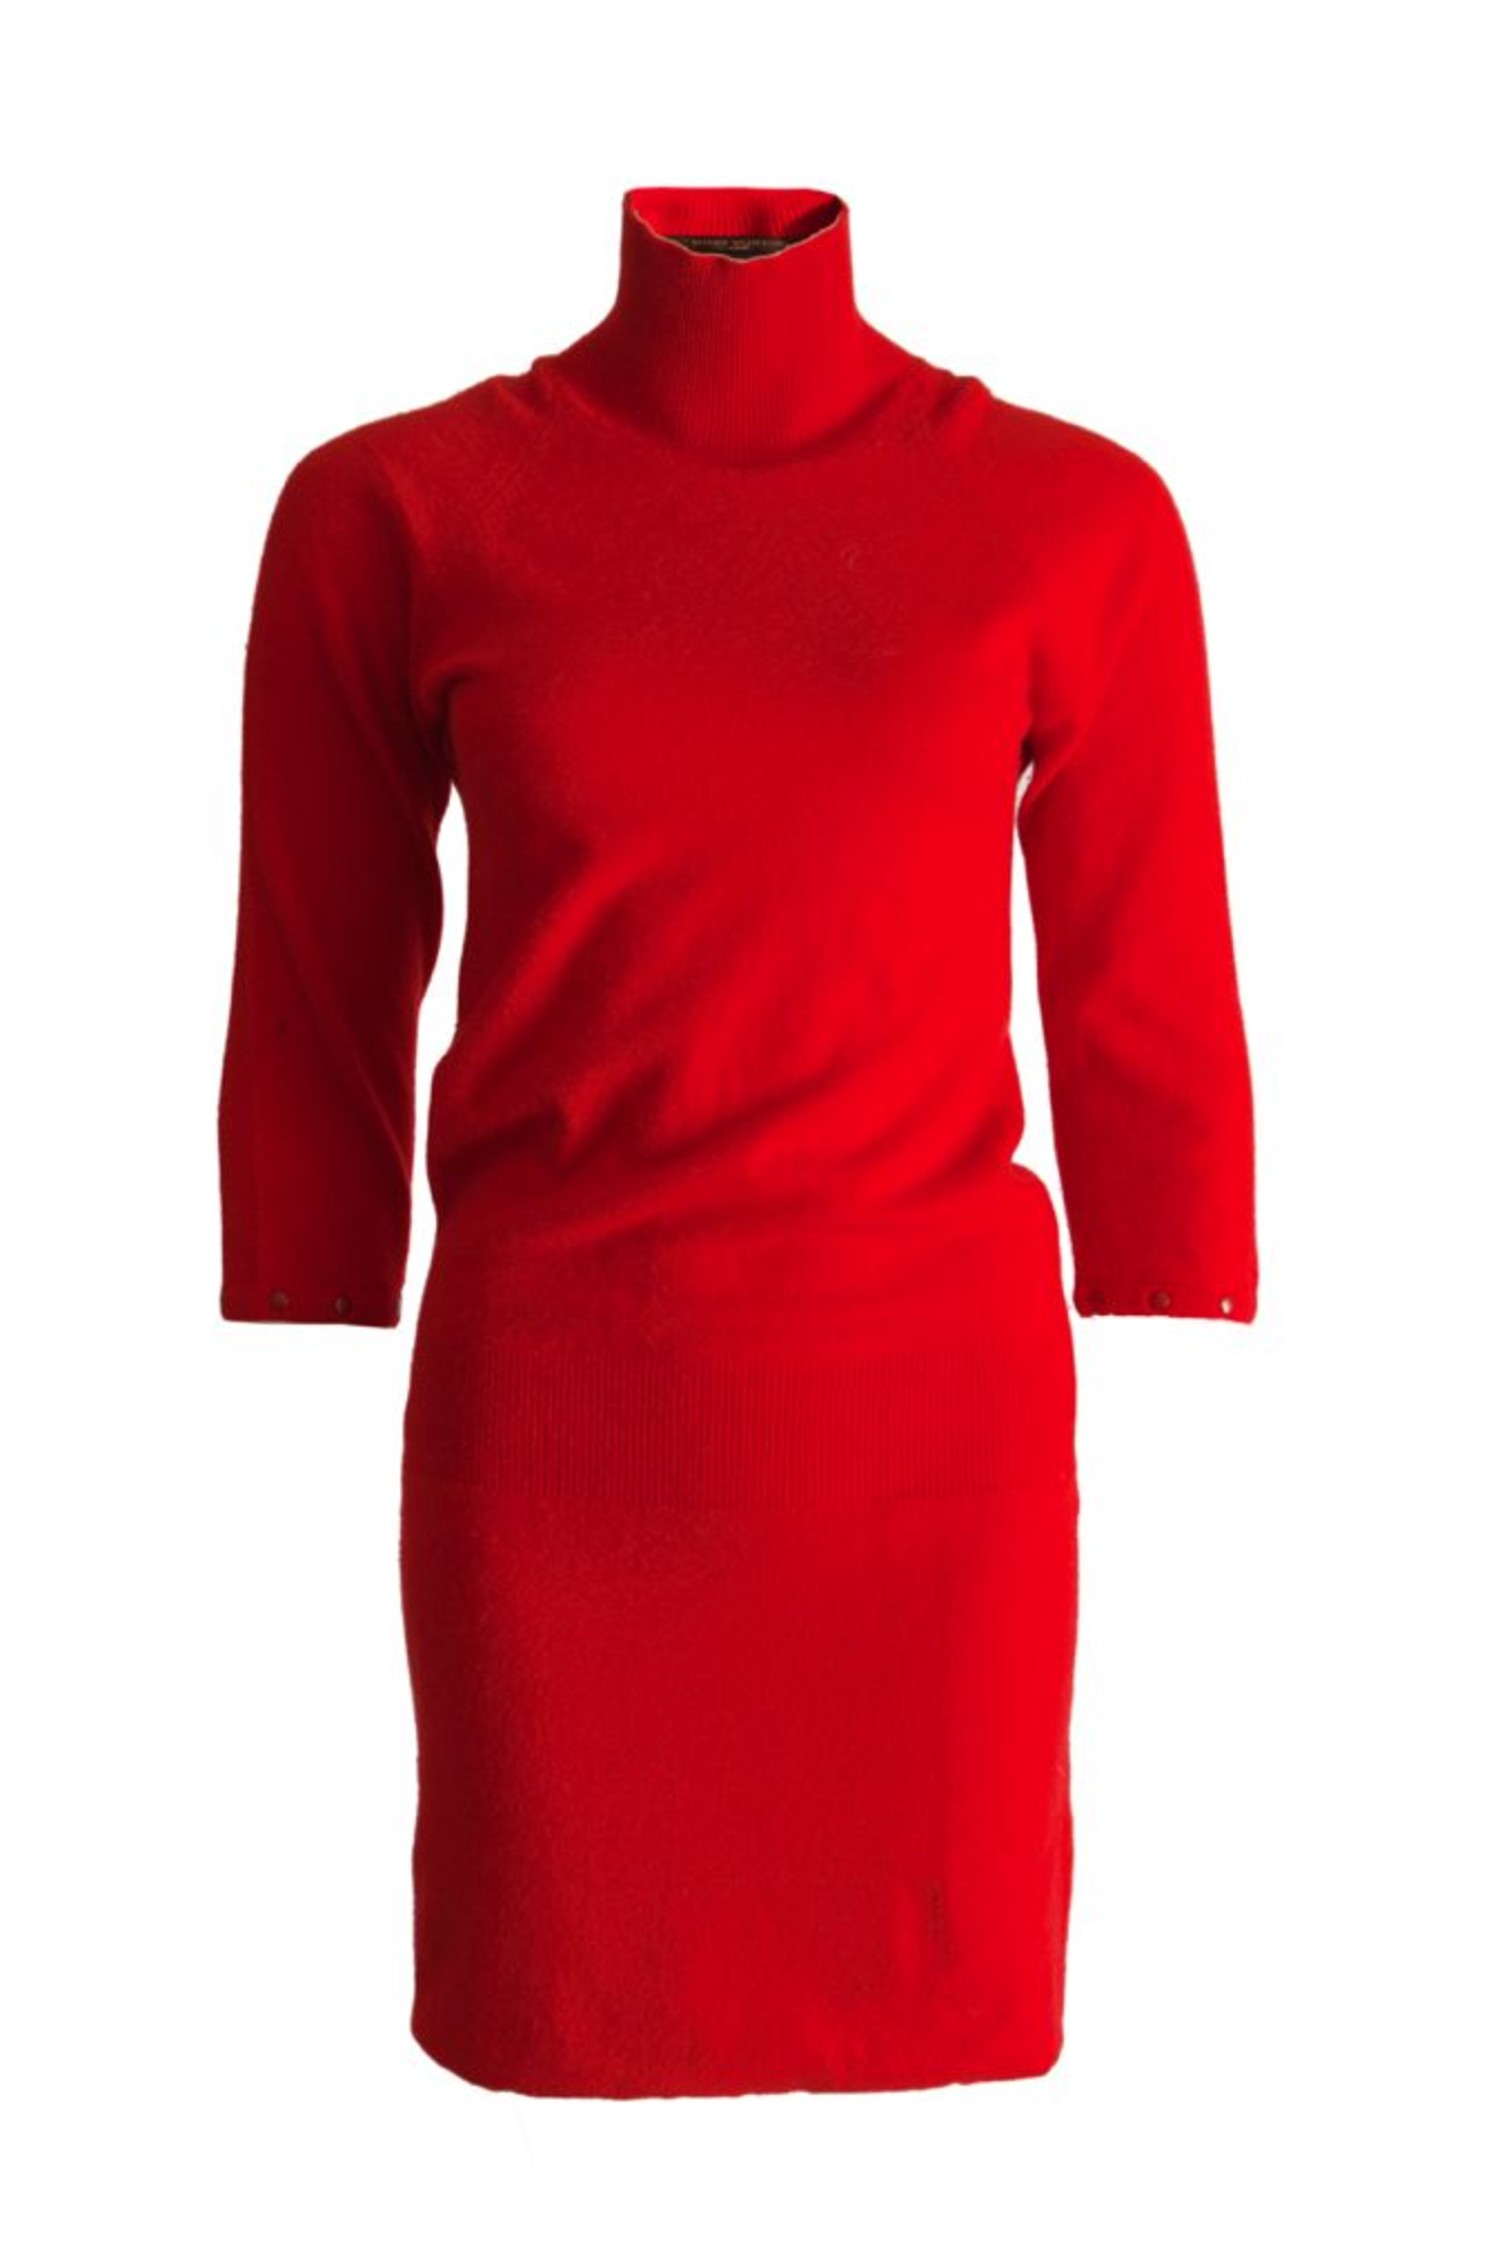 louis vuitton red dress